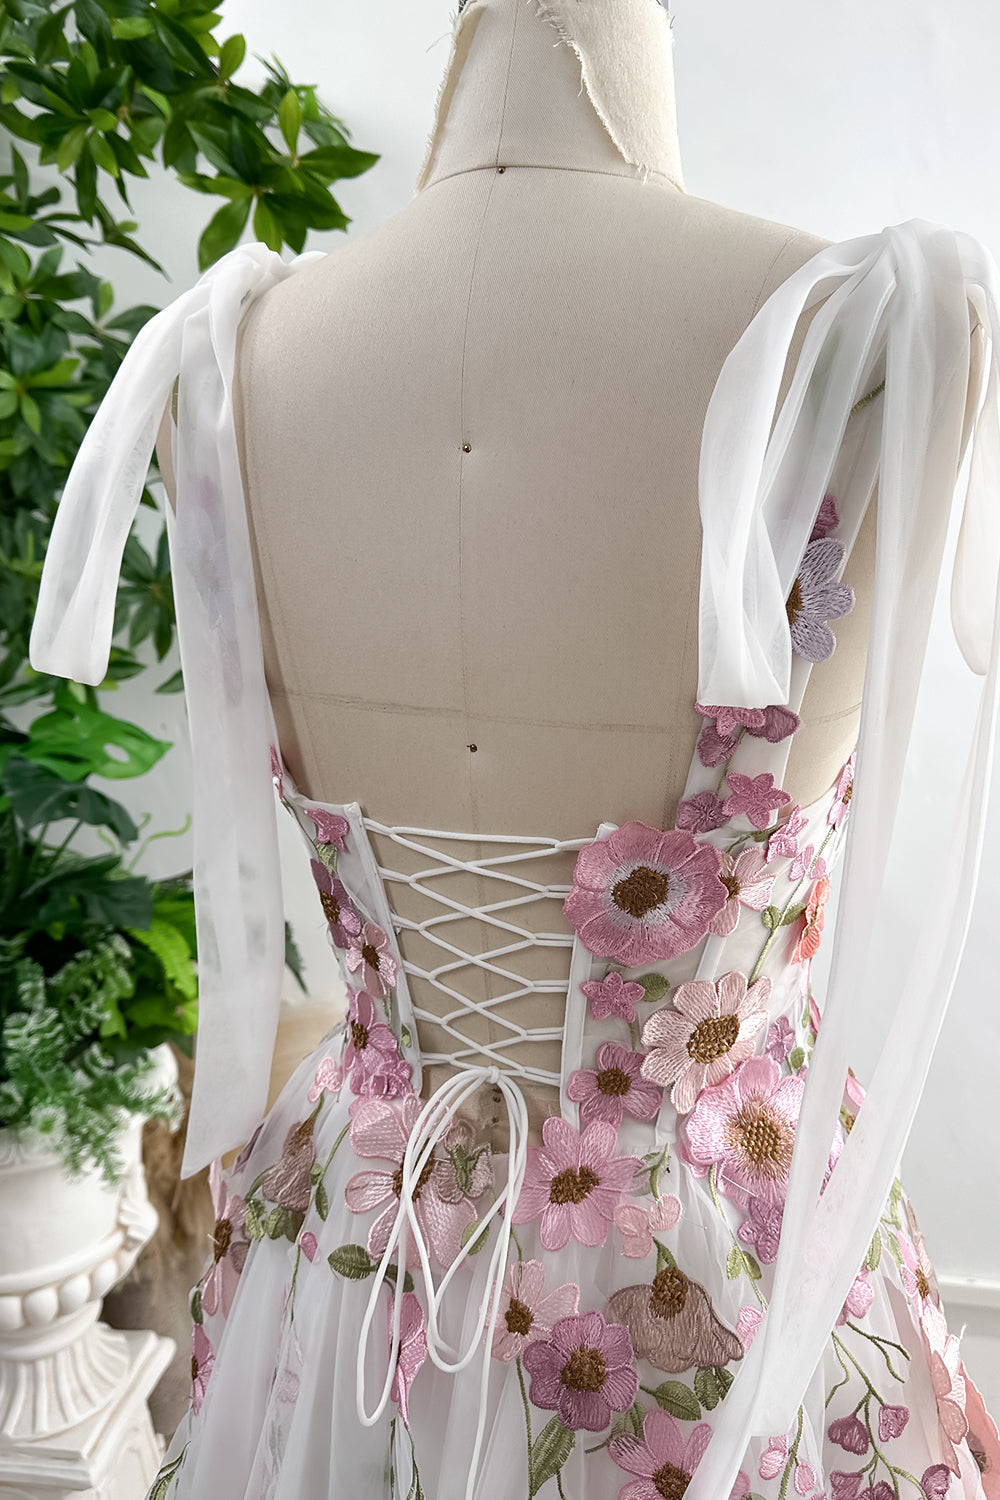 Applique Floral Corset Side Slit Dress with Removable Tie Straps